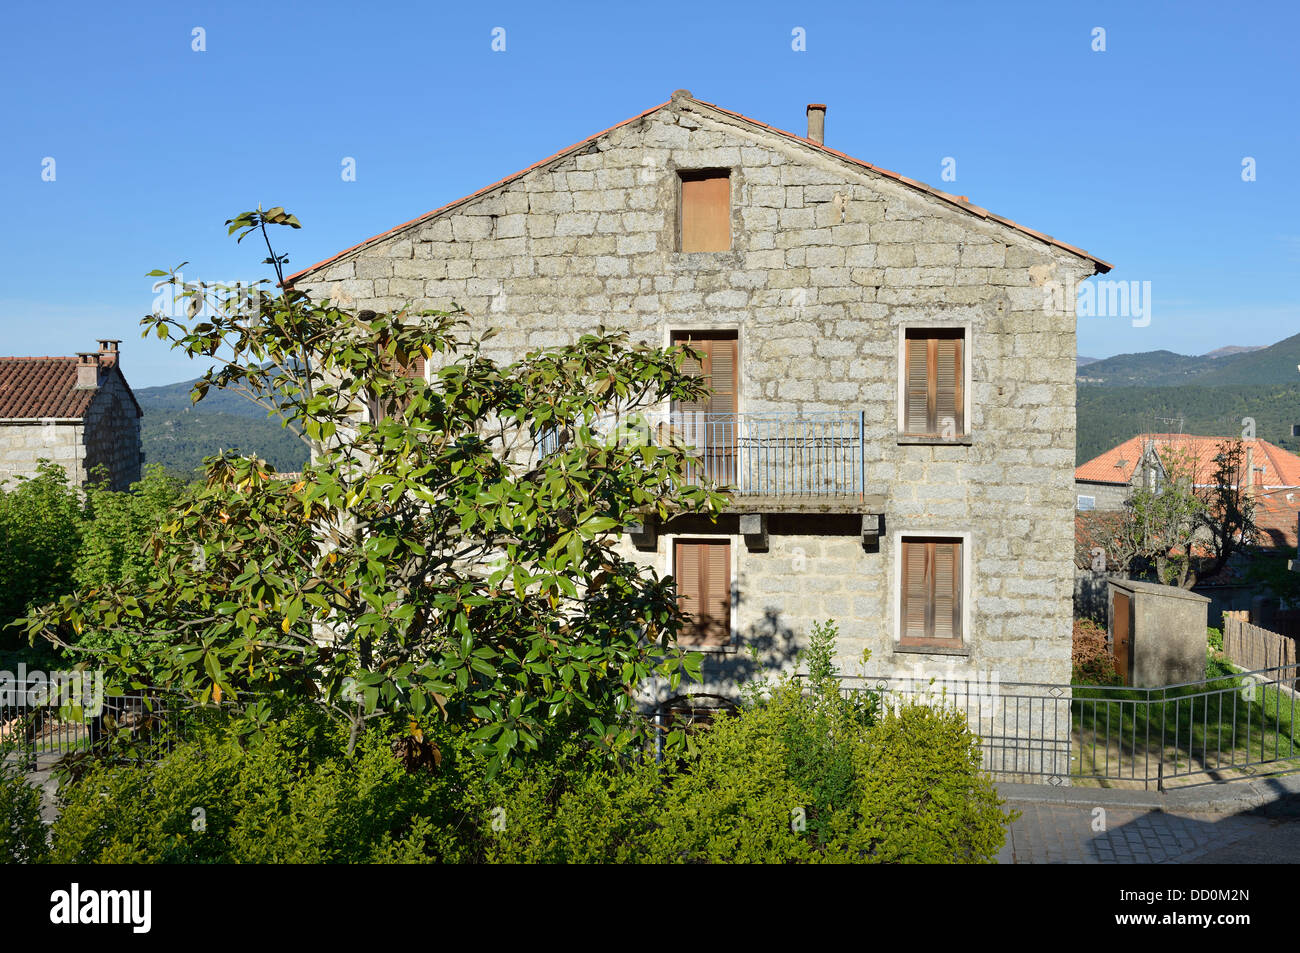 Granite house, village of Zonza, Alta Rocca region, Corsica, France Stock Photo